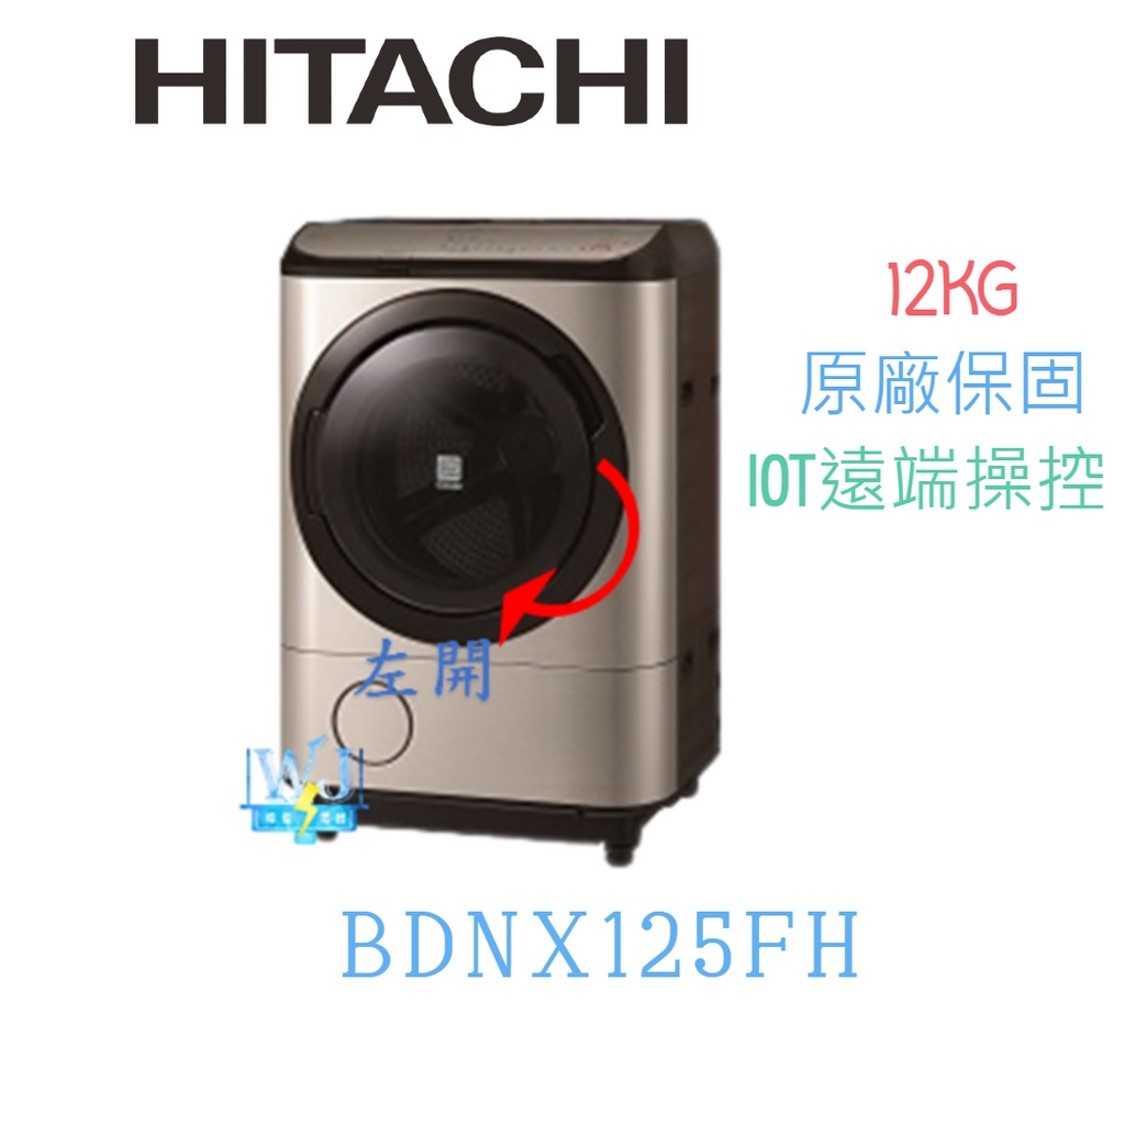 【獨家折扣碼】HITACHI 日立 BDNX125FH 12kg 左開 洗衣機 BD-NX125FH 洗脫烘 洗衣機